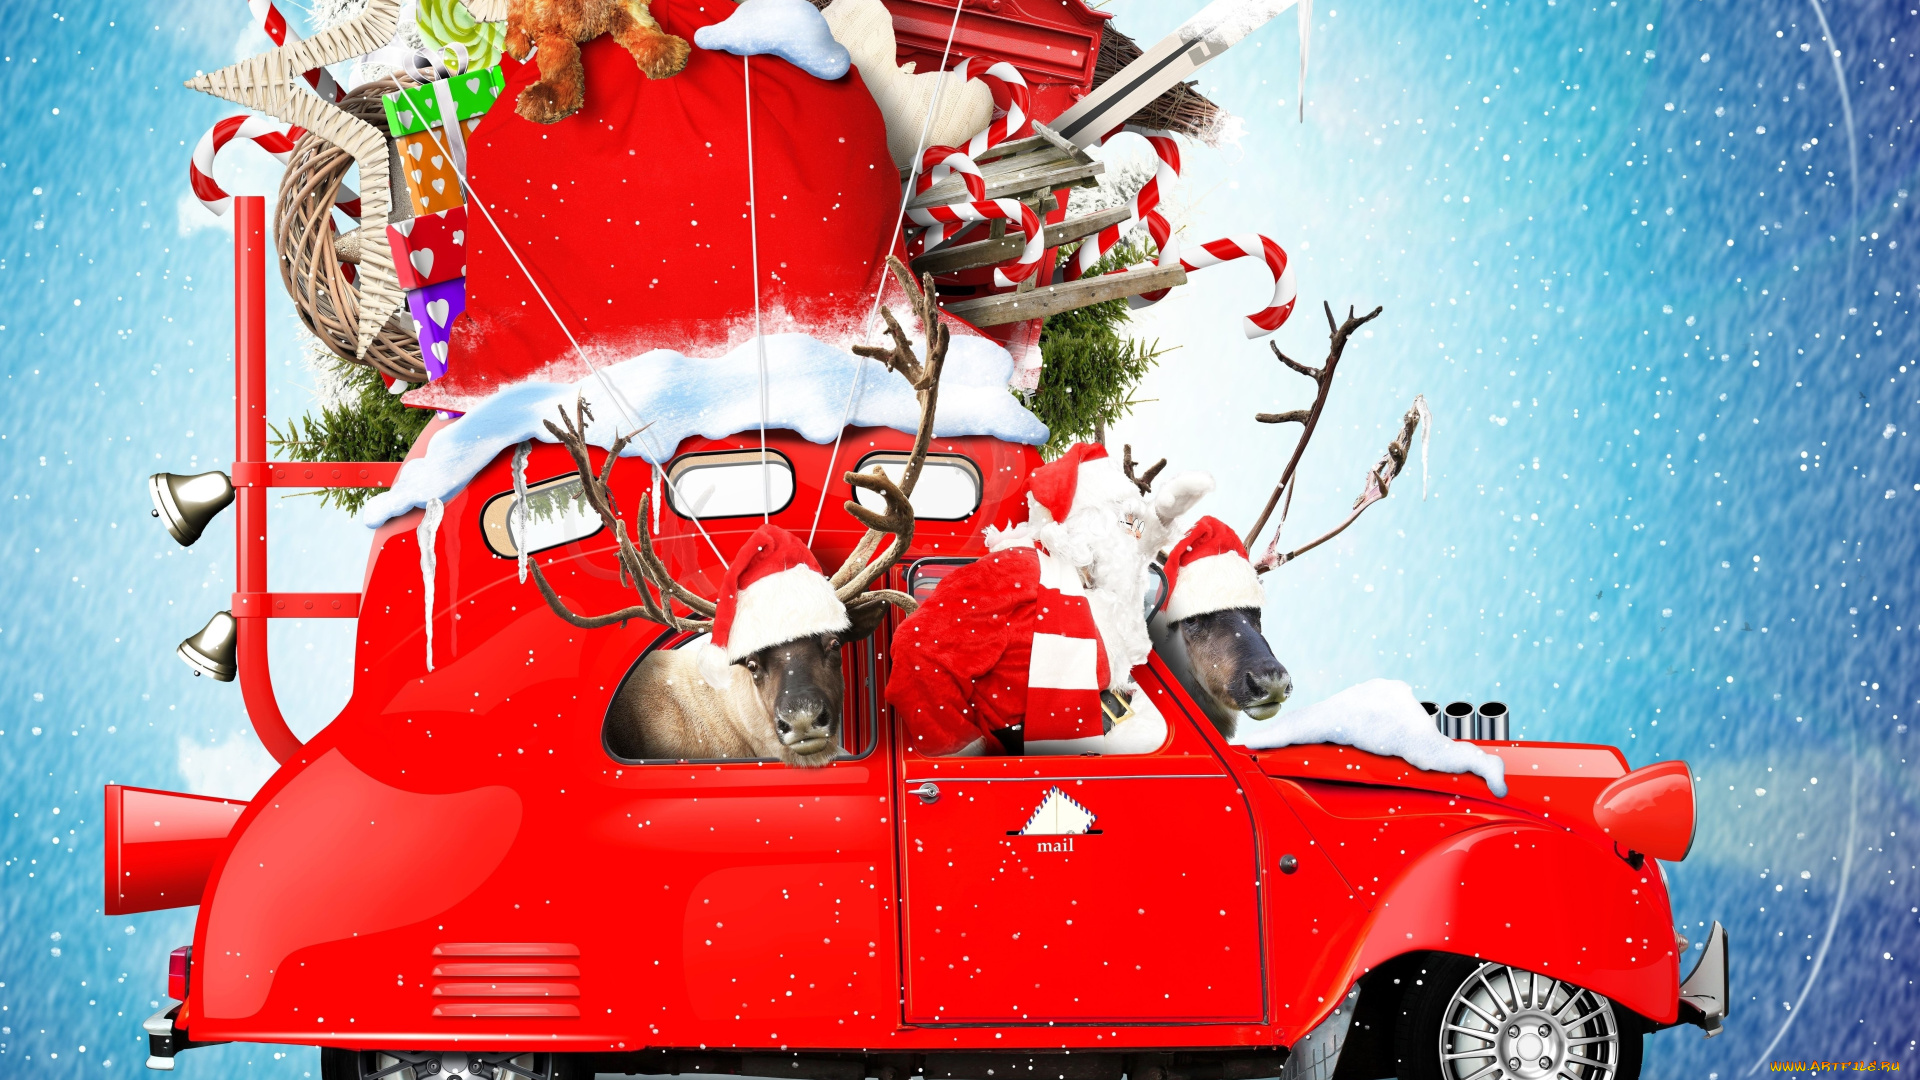 праздничные, дед, мороз, , санта, клаус, автомобиль, новый, год, санта-клаус, игрушки, снежинки, снег, дед, мороз, подарки, праздник, фон, плюшевые, леденцы, олени, красный, креатив, колокольчики, фотошоп, мешок, рождество